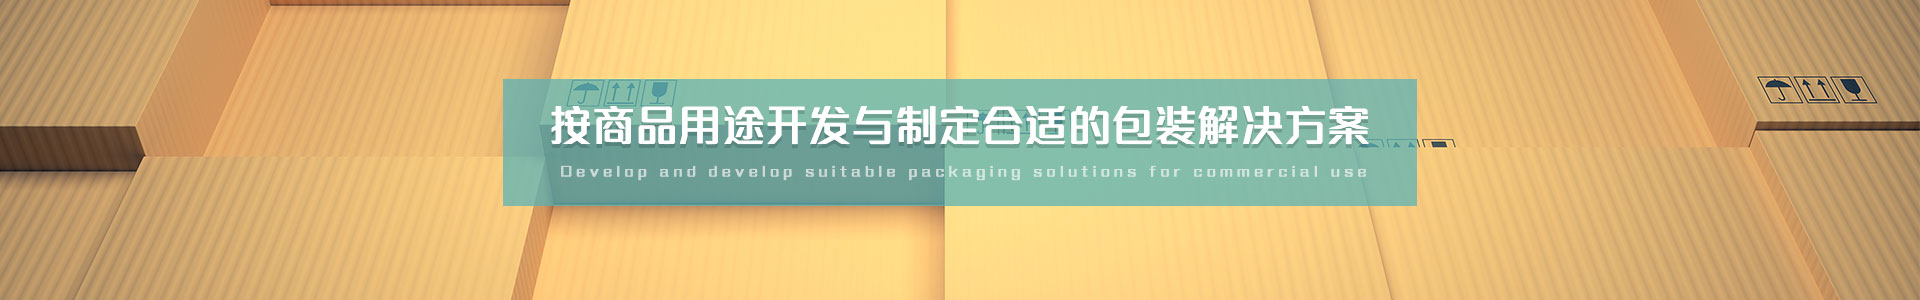 普通纸箱   按商品用途开发与制定合适的包装解决方案